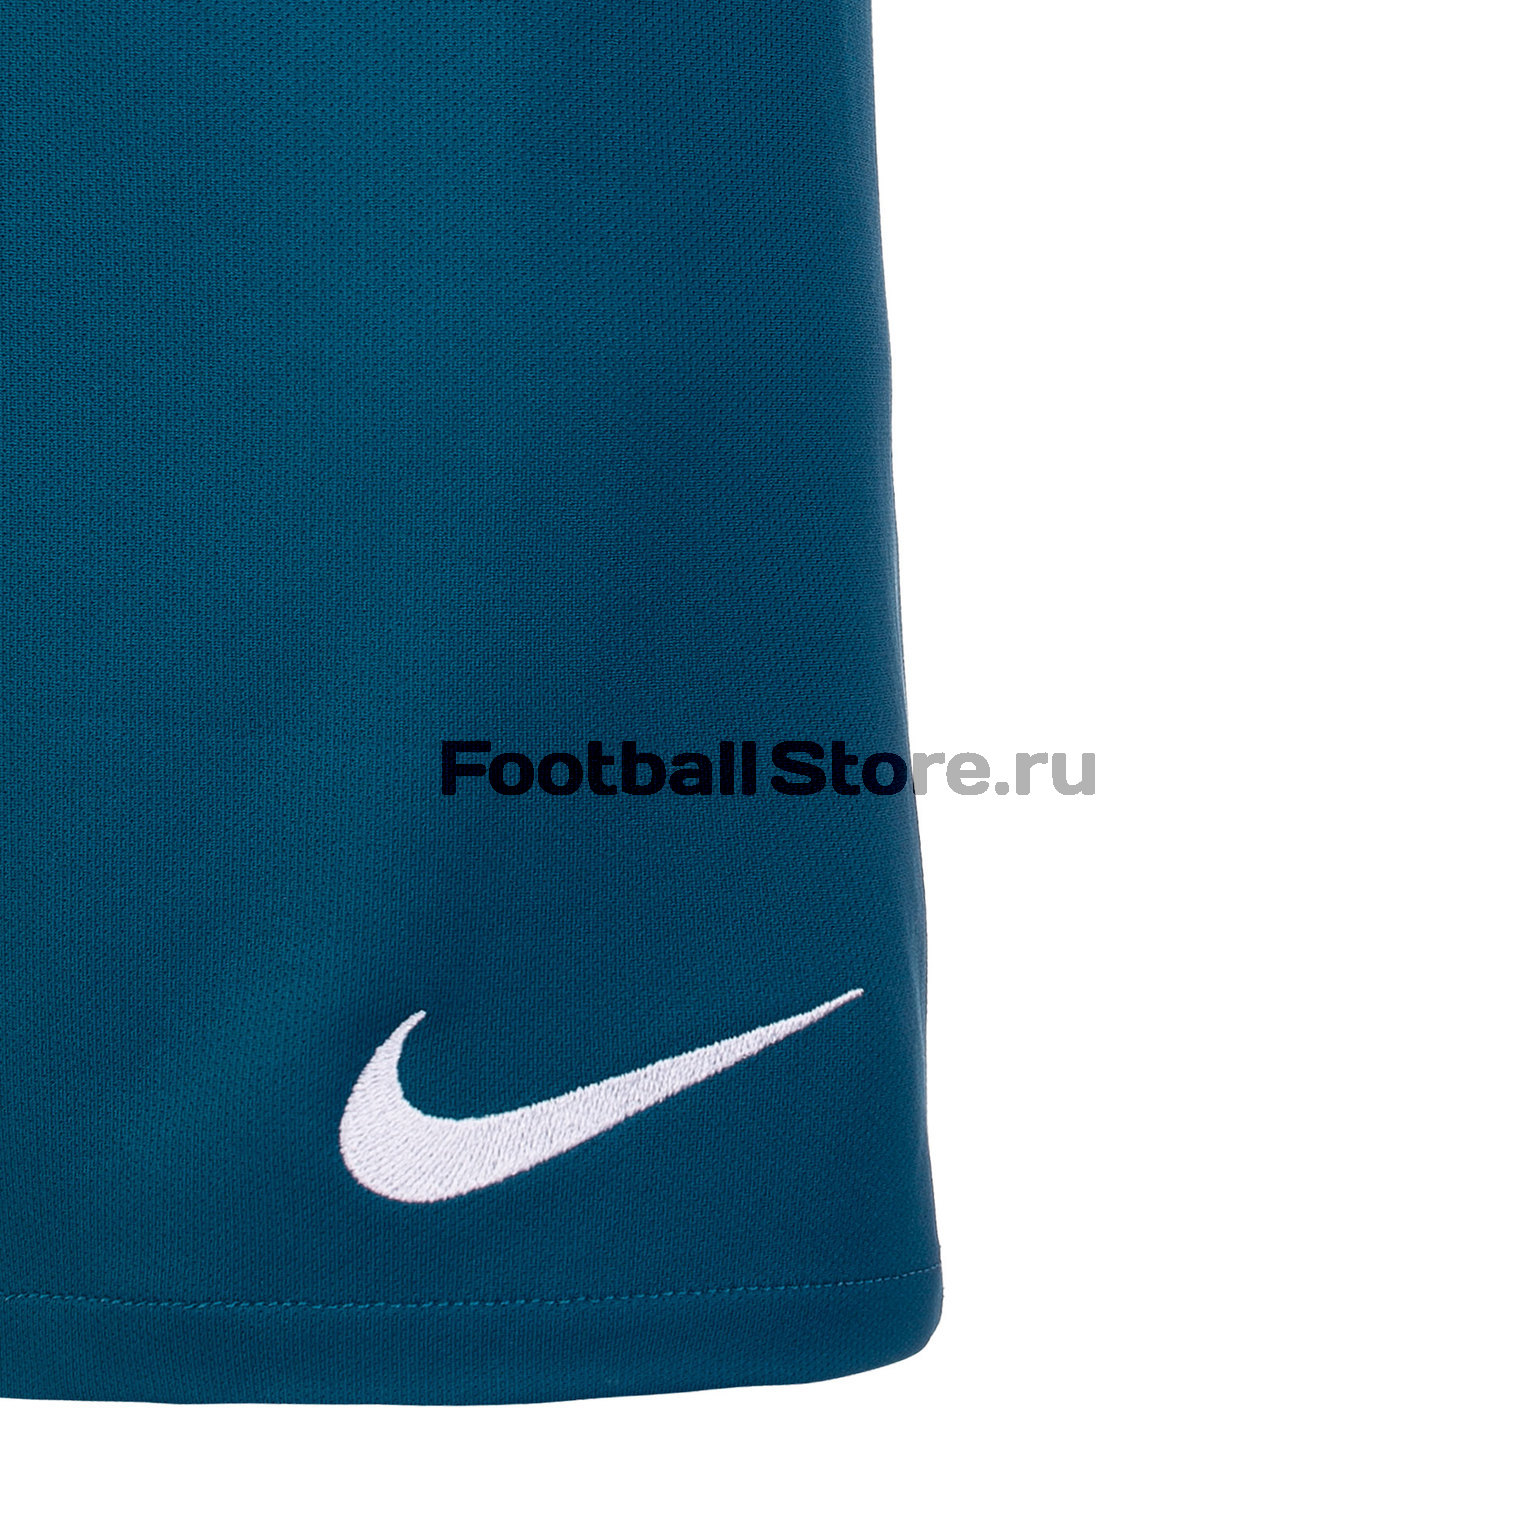 Шорты игровые домашние Nike Zenit сезон 2019/20